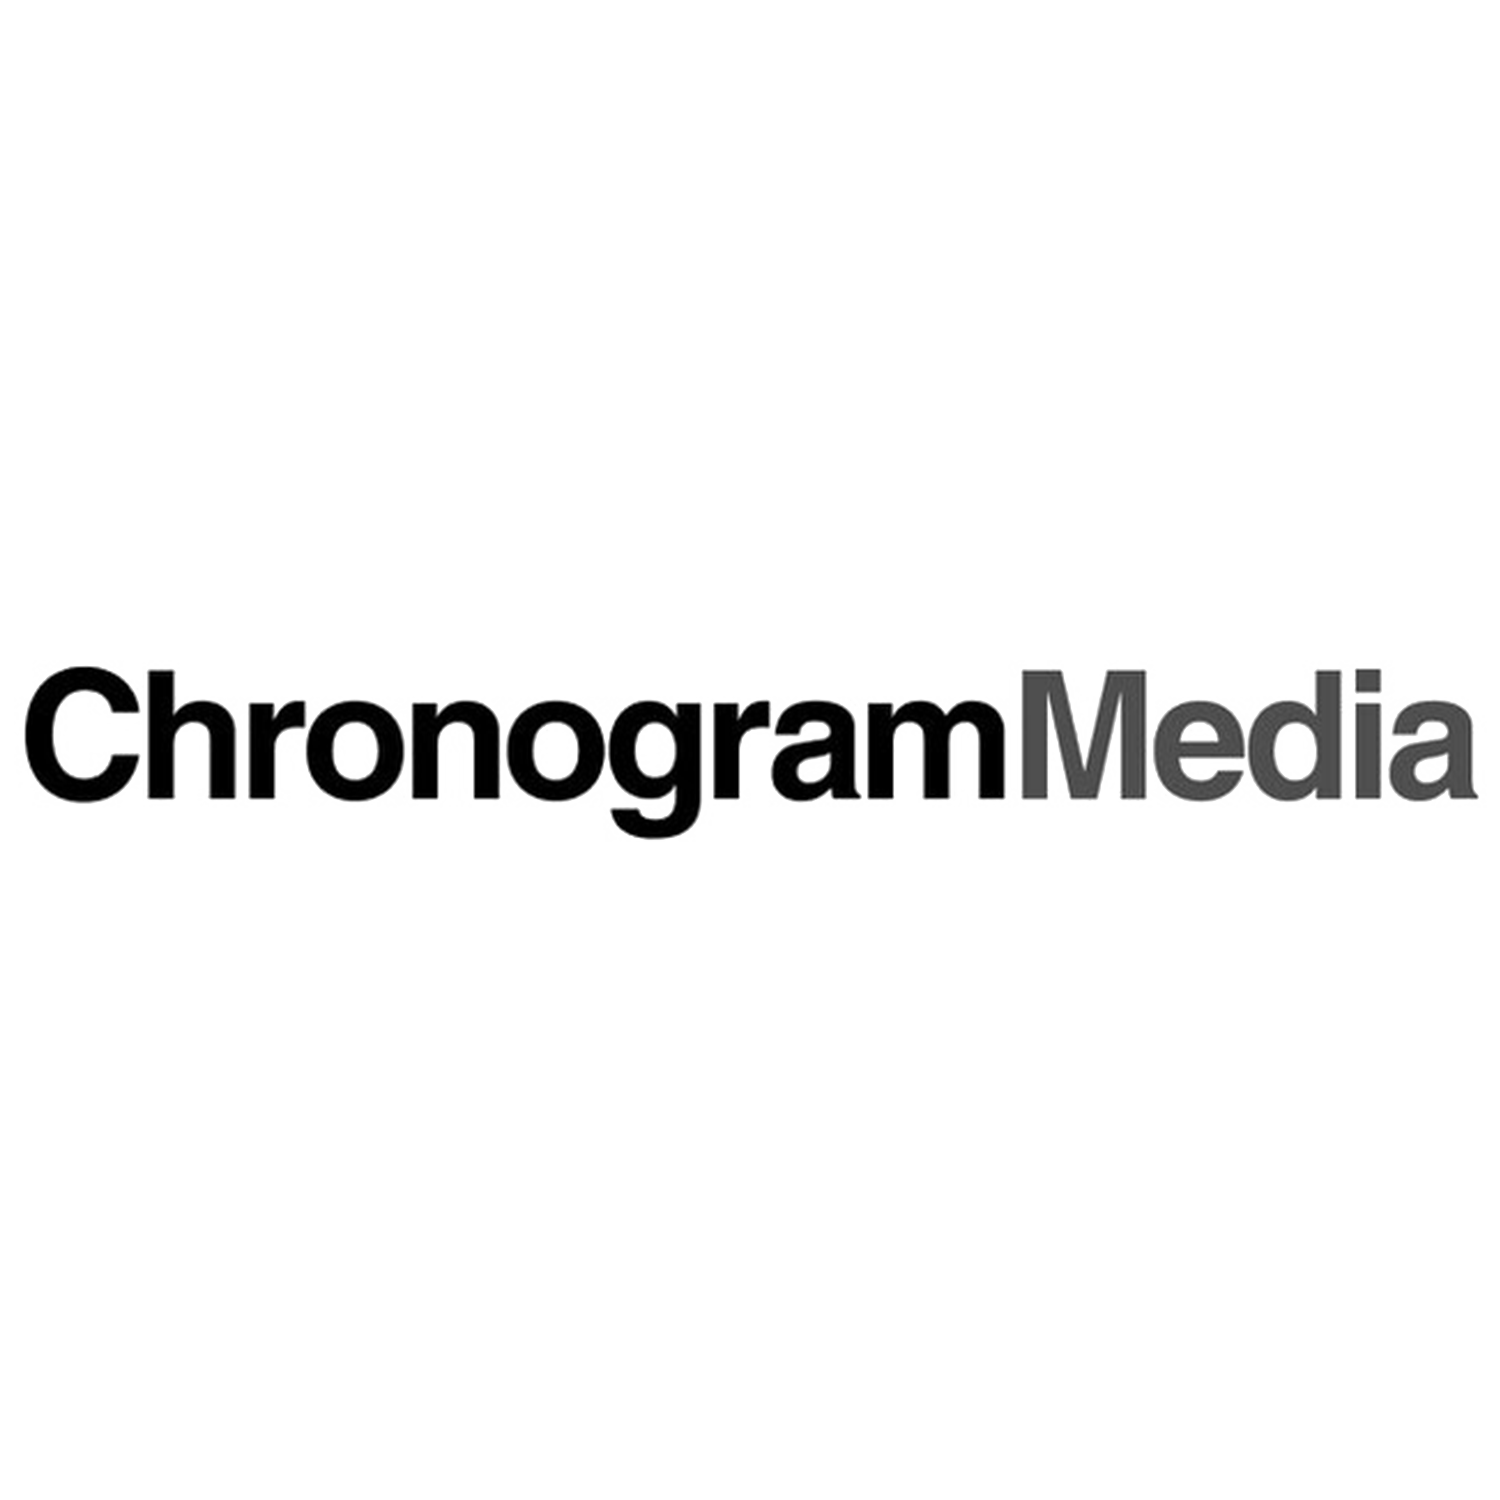  chronogram media logo 